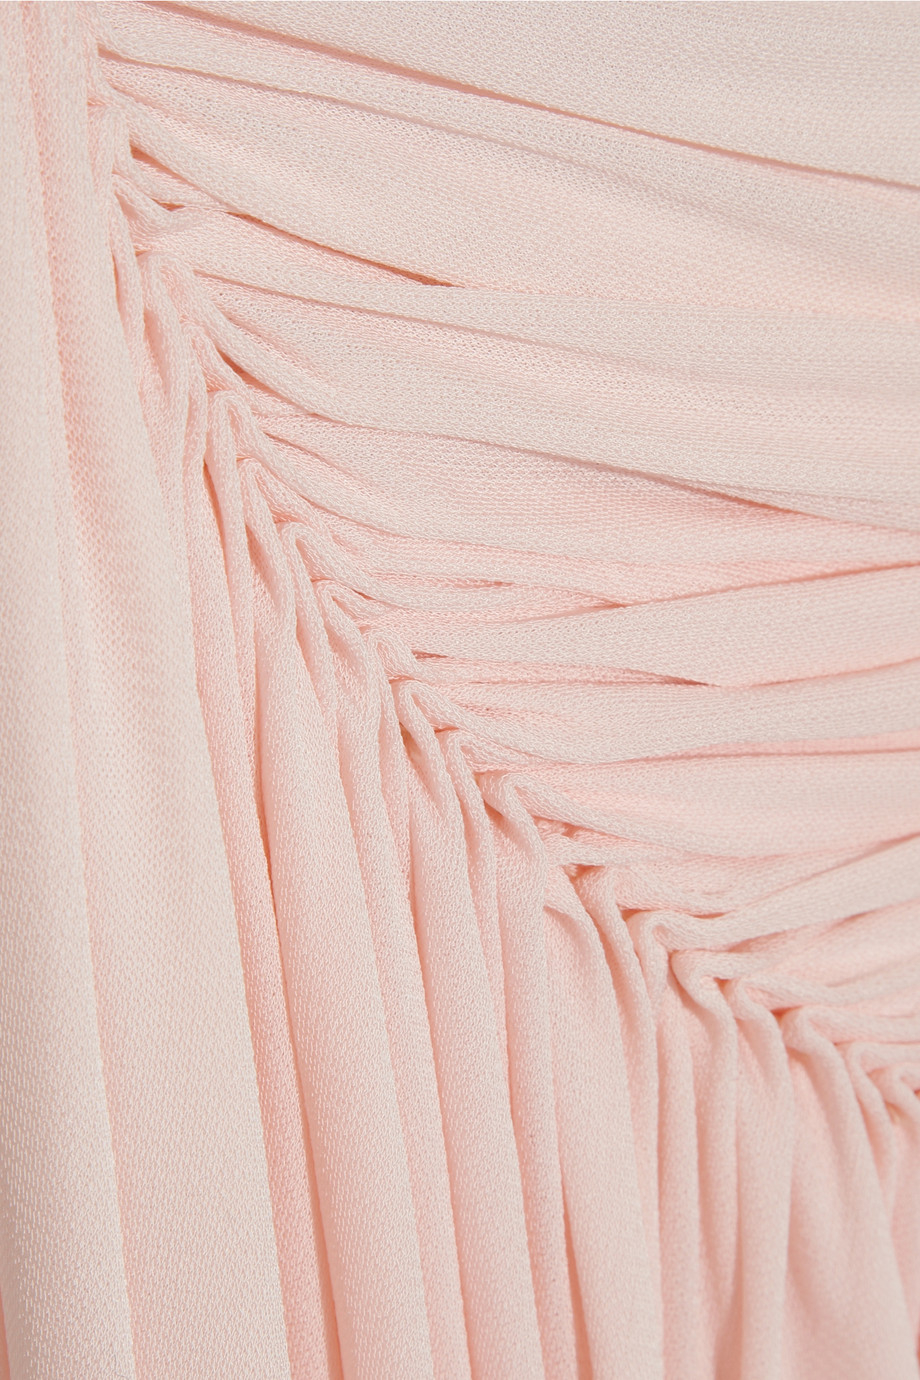 Lyst - Sophia kokosalaki Draped Wrap-Effect Crepe-Jersey Gown in Pink